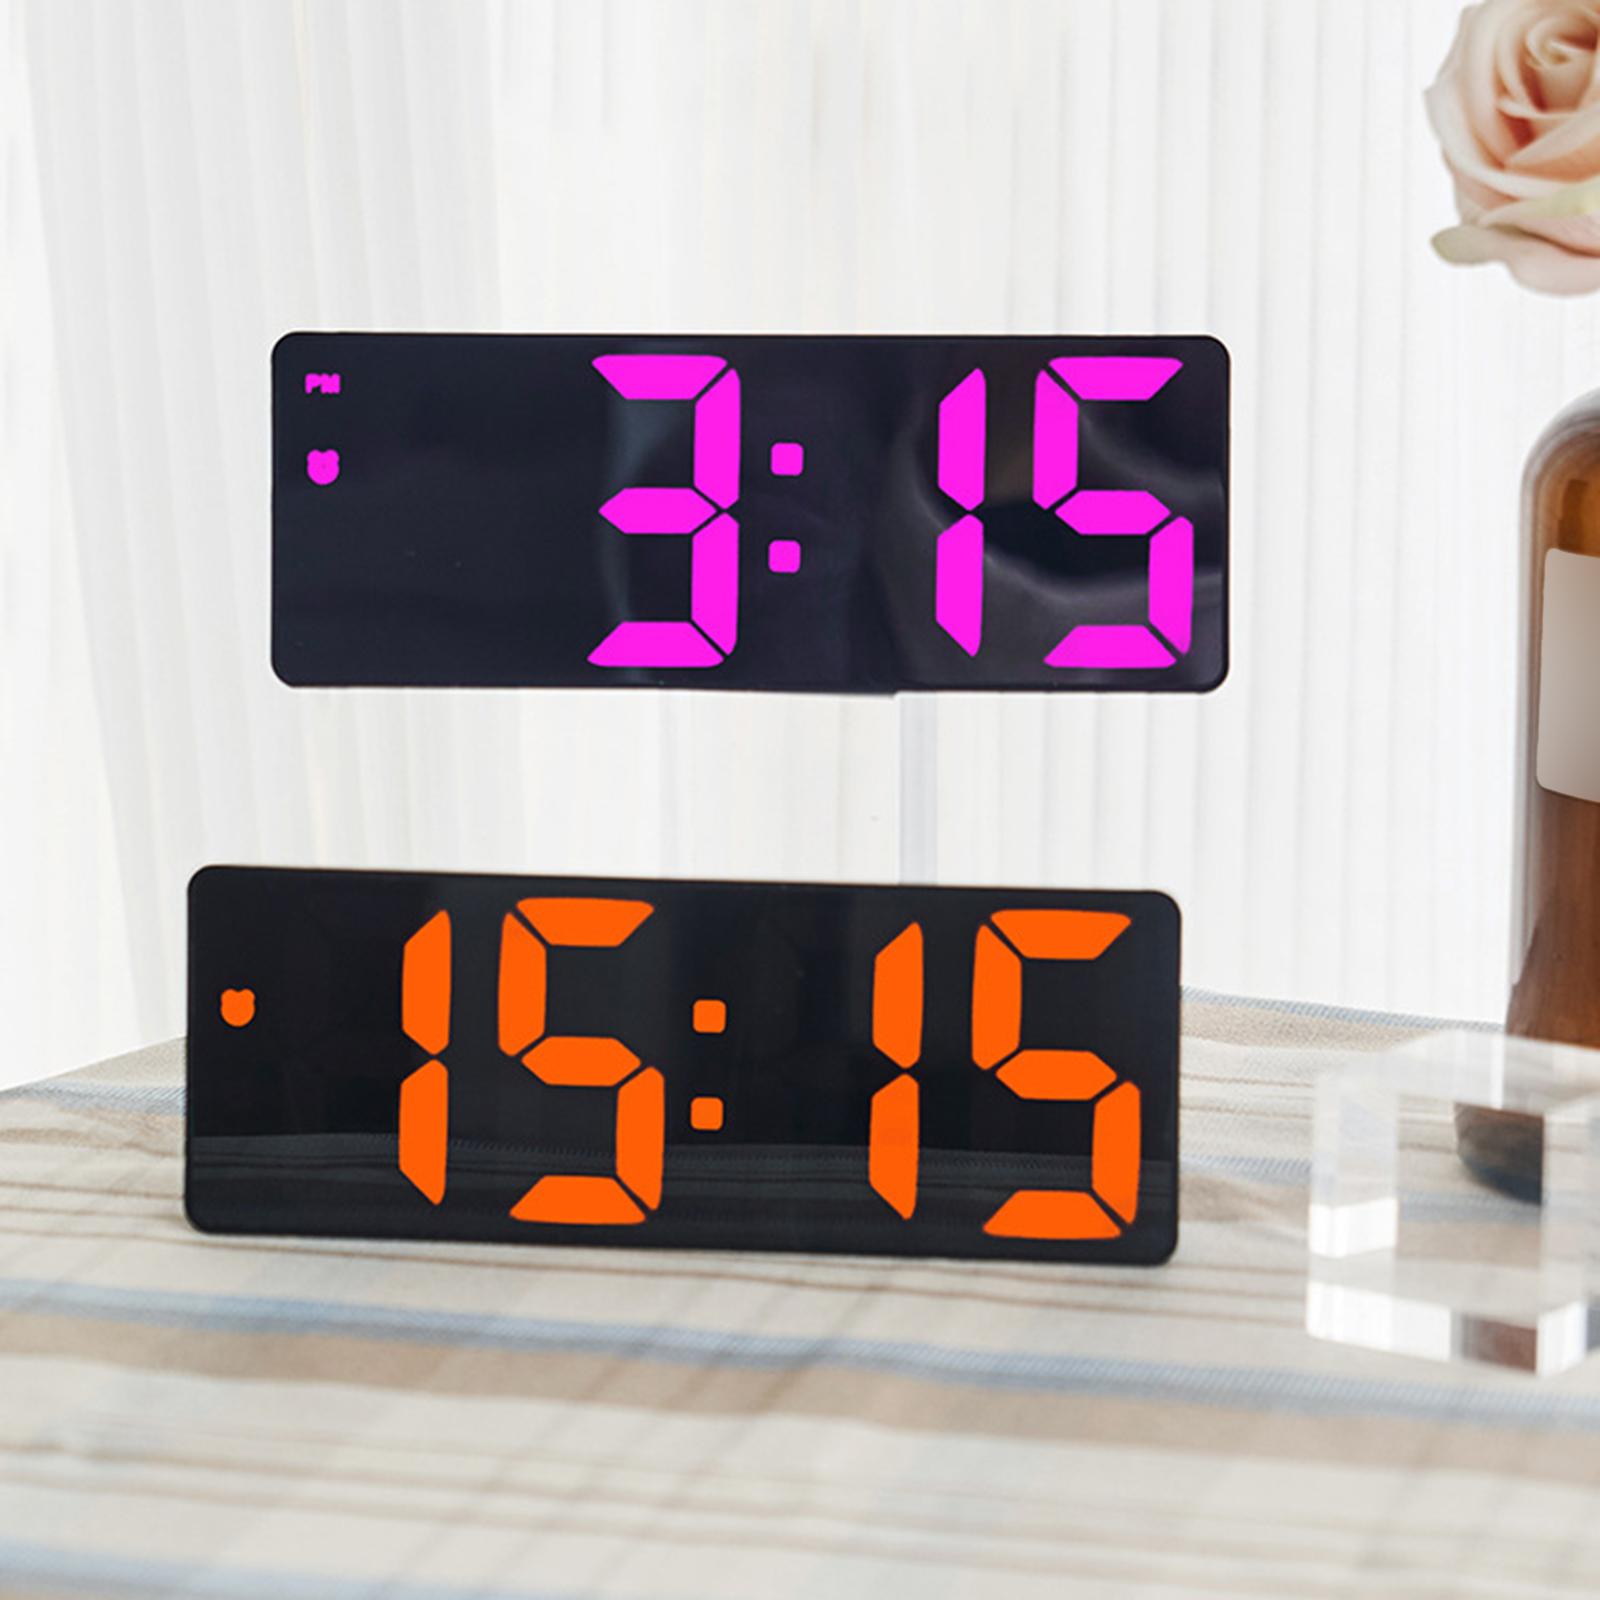 Digital Wall Clock Desk LED Desktop Alarm Clock for Living Room Adult Office Blue